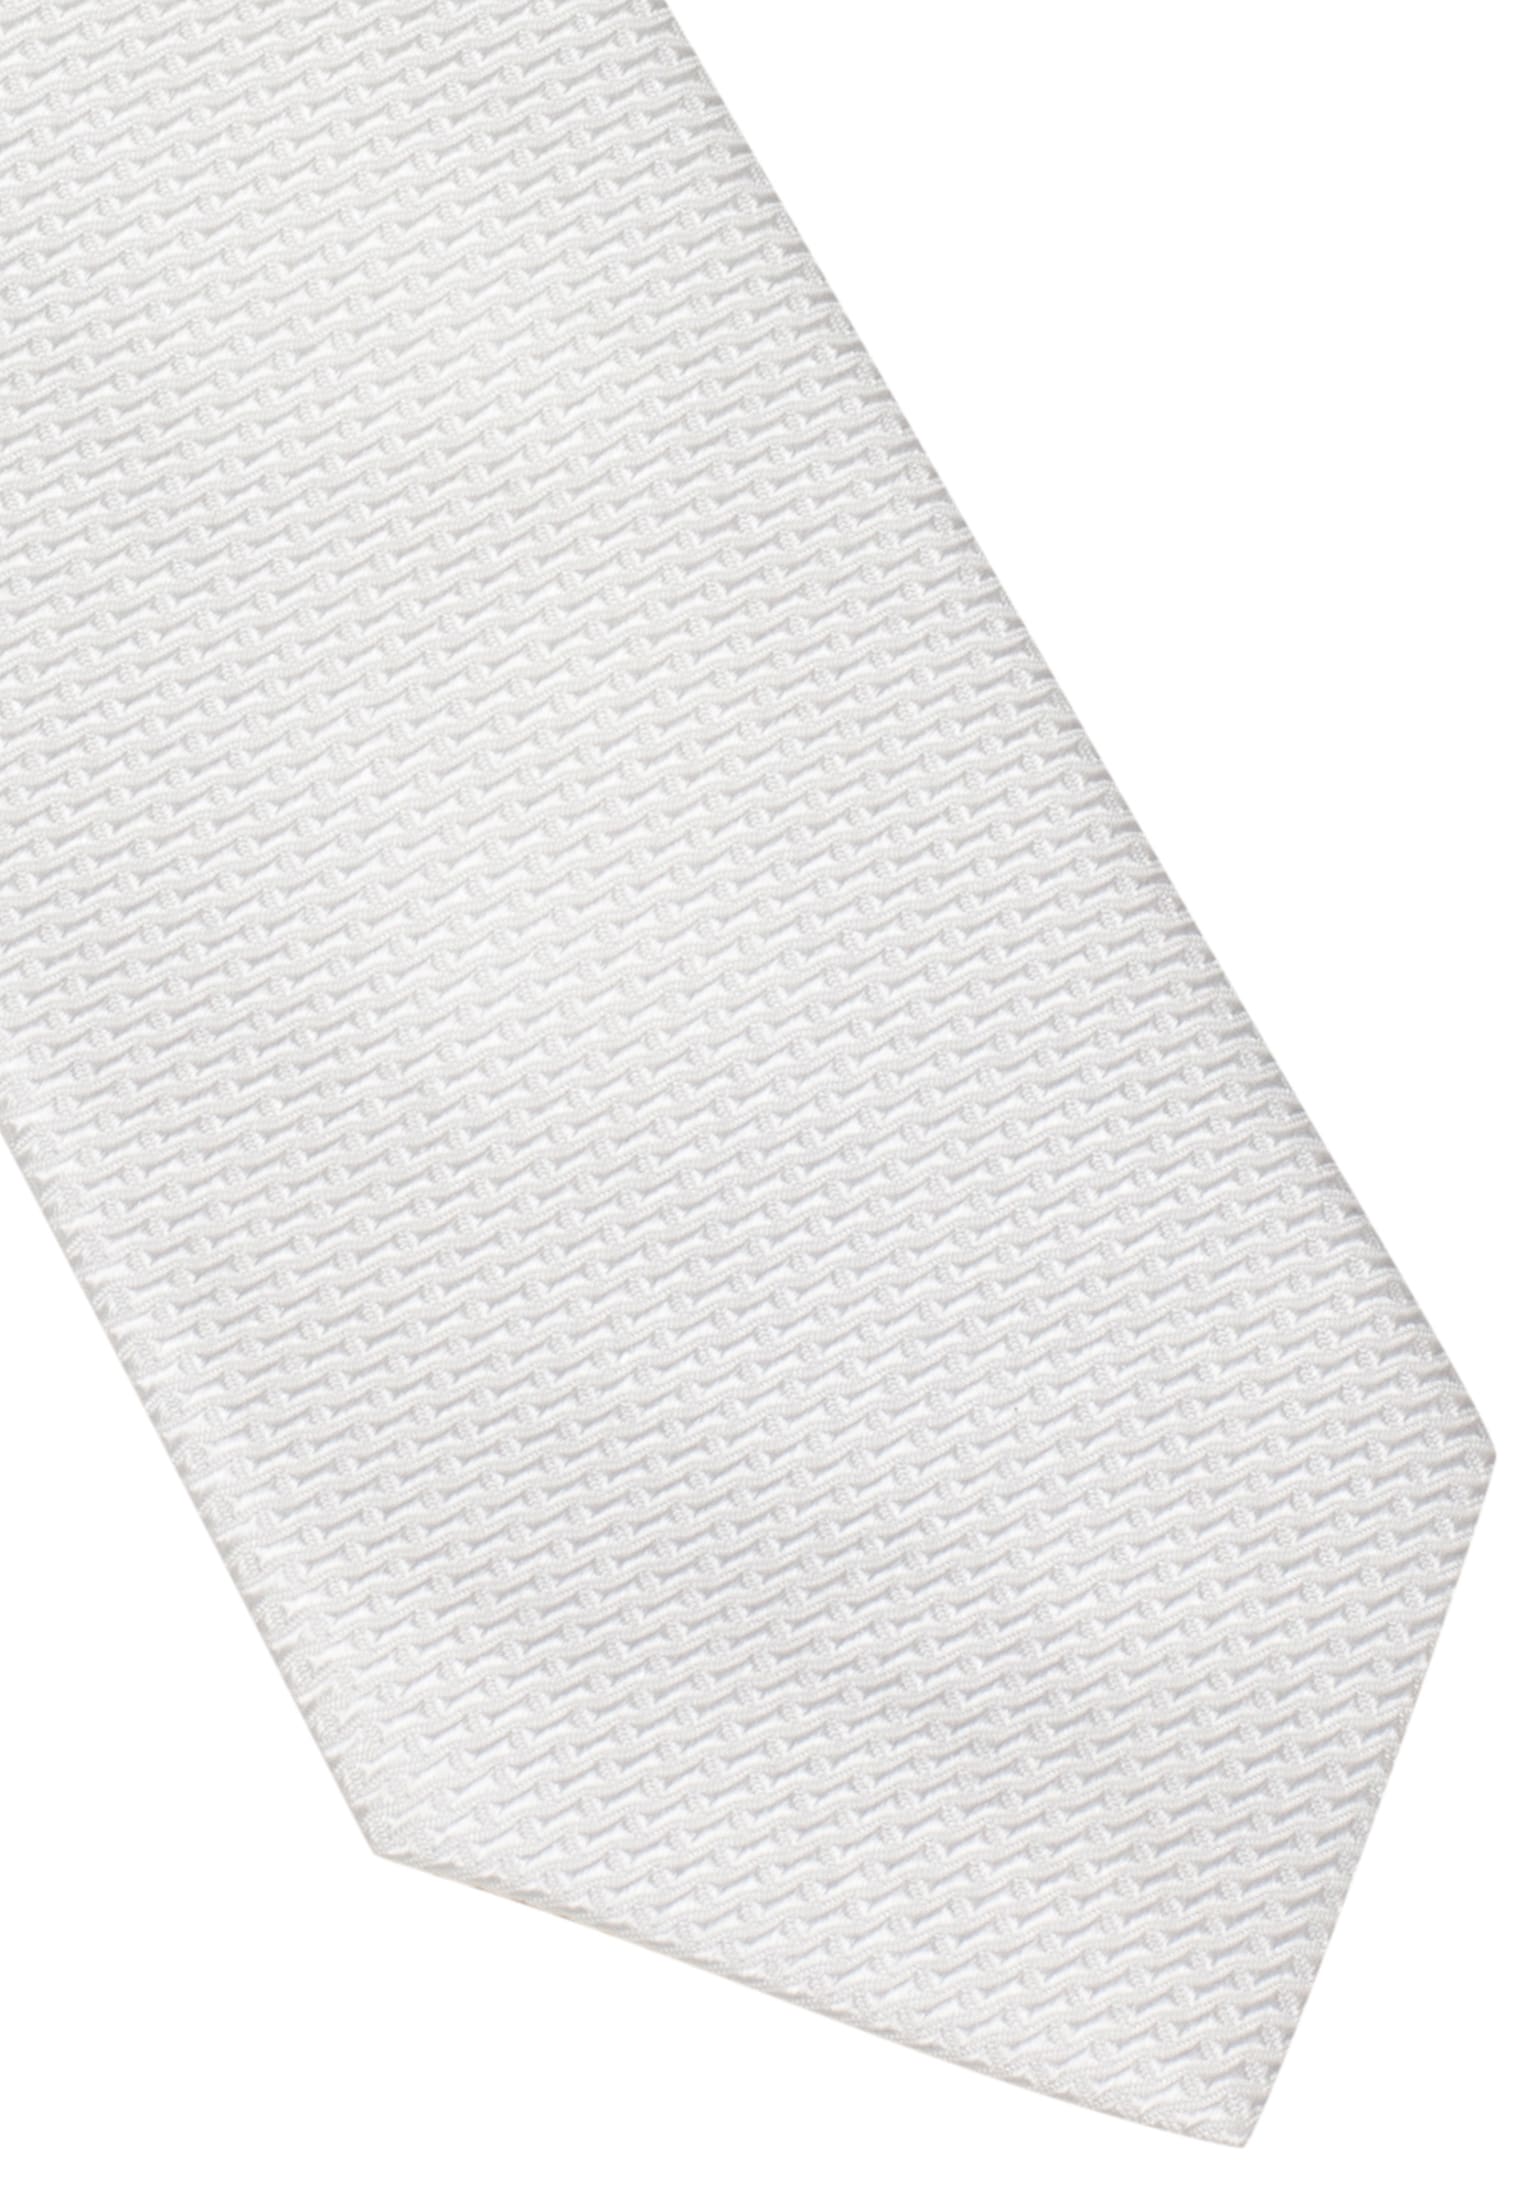 Krawatte | weiß in strukturiert weiß 1AC01872-00-01-142 | | 142